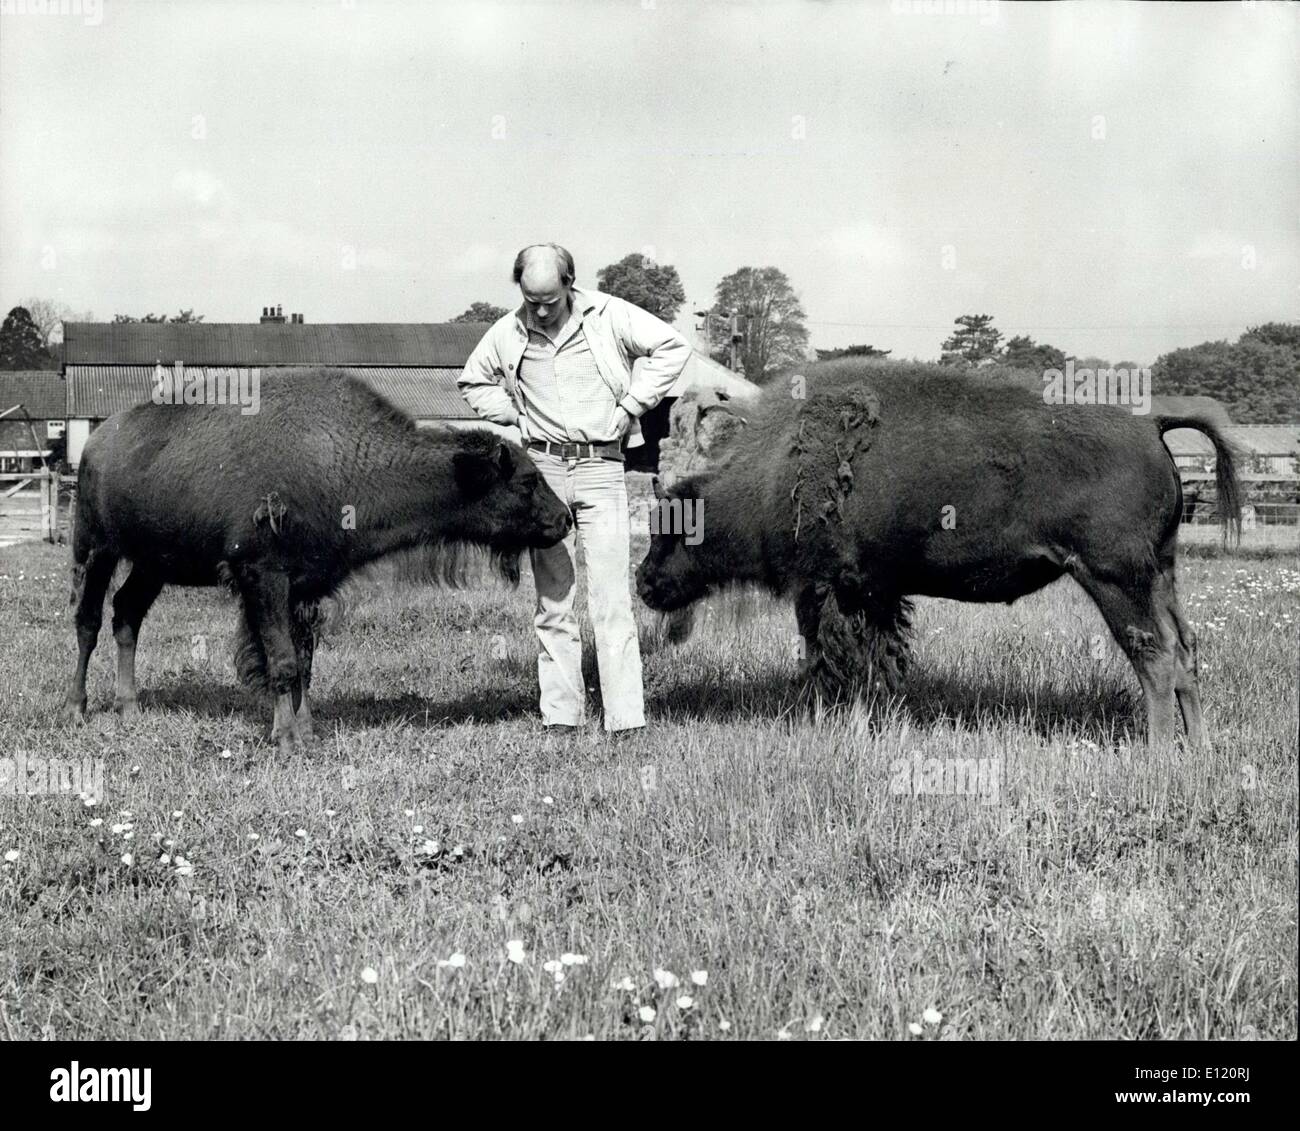 1. Juni 1981 - Braten Bison von England: American Bison haben zu einem Numberside in einem Versuch, billig, mageres Rindfleisch zu produzieren. Und es könnte zu den groß angelegten Fleischproduktion auf Tausenden von Hektar grobe Grünland zu Arm, um inländische Rinder zu unterstützen. Die Bison ist eines der frühesten bekannten Arten von Buffalo, die Tierfamilie, die in heutigen Hausrinder über Tausende von Jahren entwickelt wurde. Herr Peter Dunning, ein Bauer, der Bischof Burton, in der Nähe von Beverly, hat zwei junge Bisons Kühe aus einem britischen Zoo gekauft. Sie werden bald von einem jungen Stier verbunden werden Stockfoto